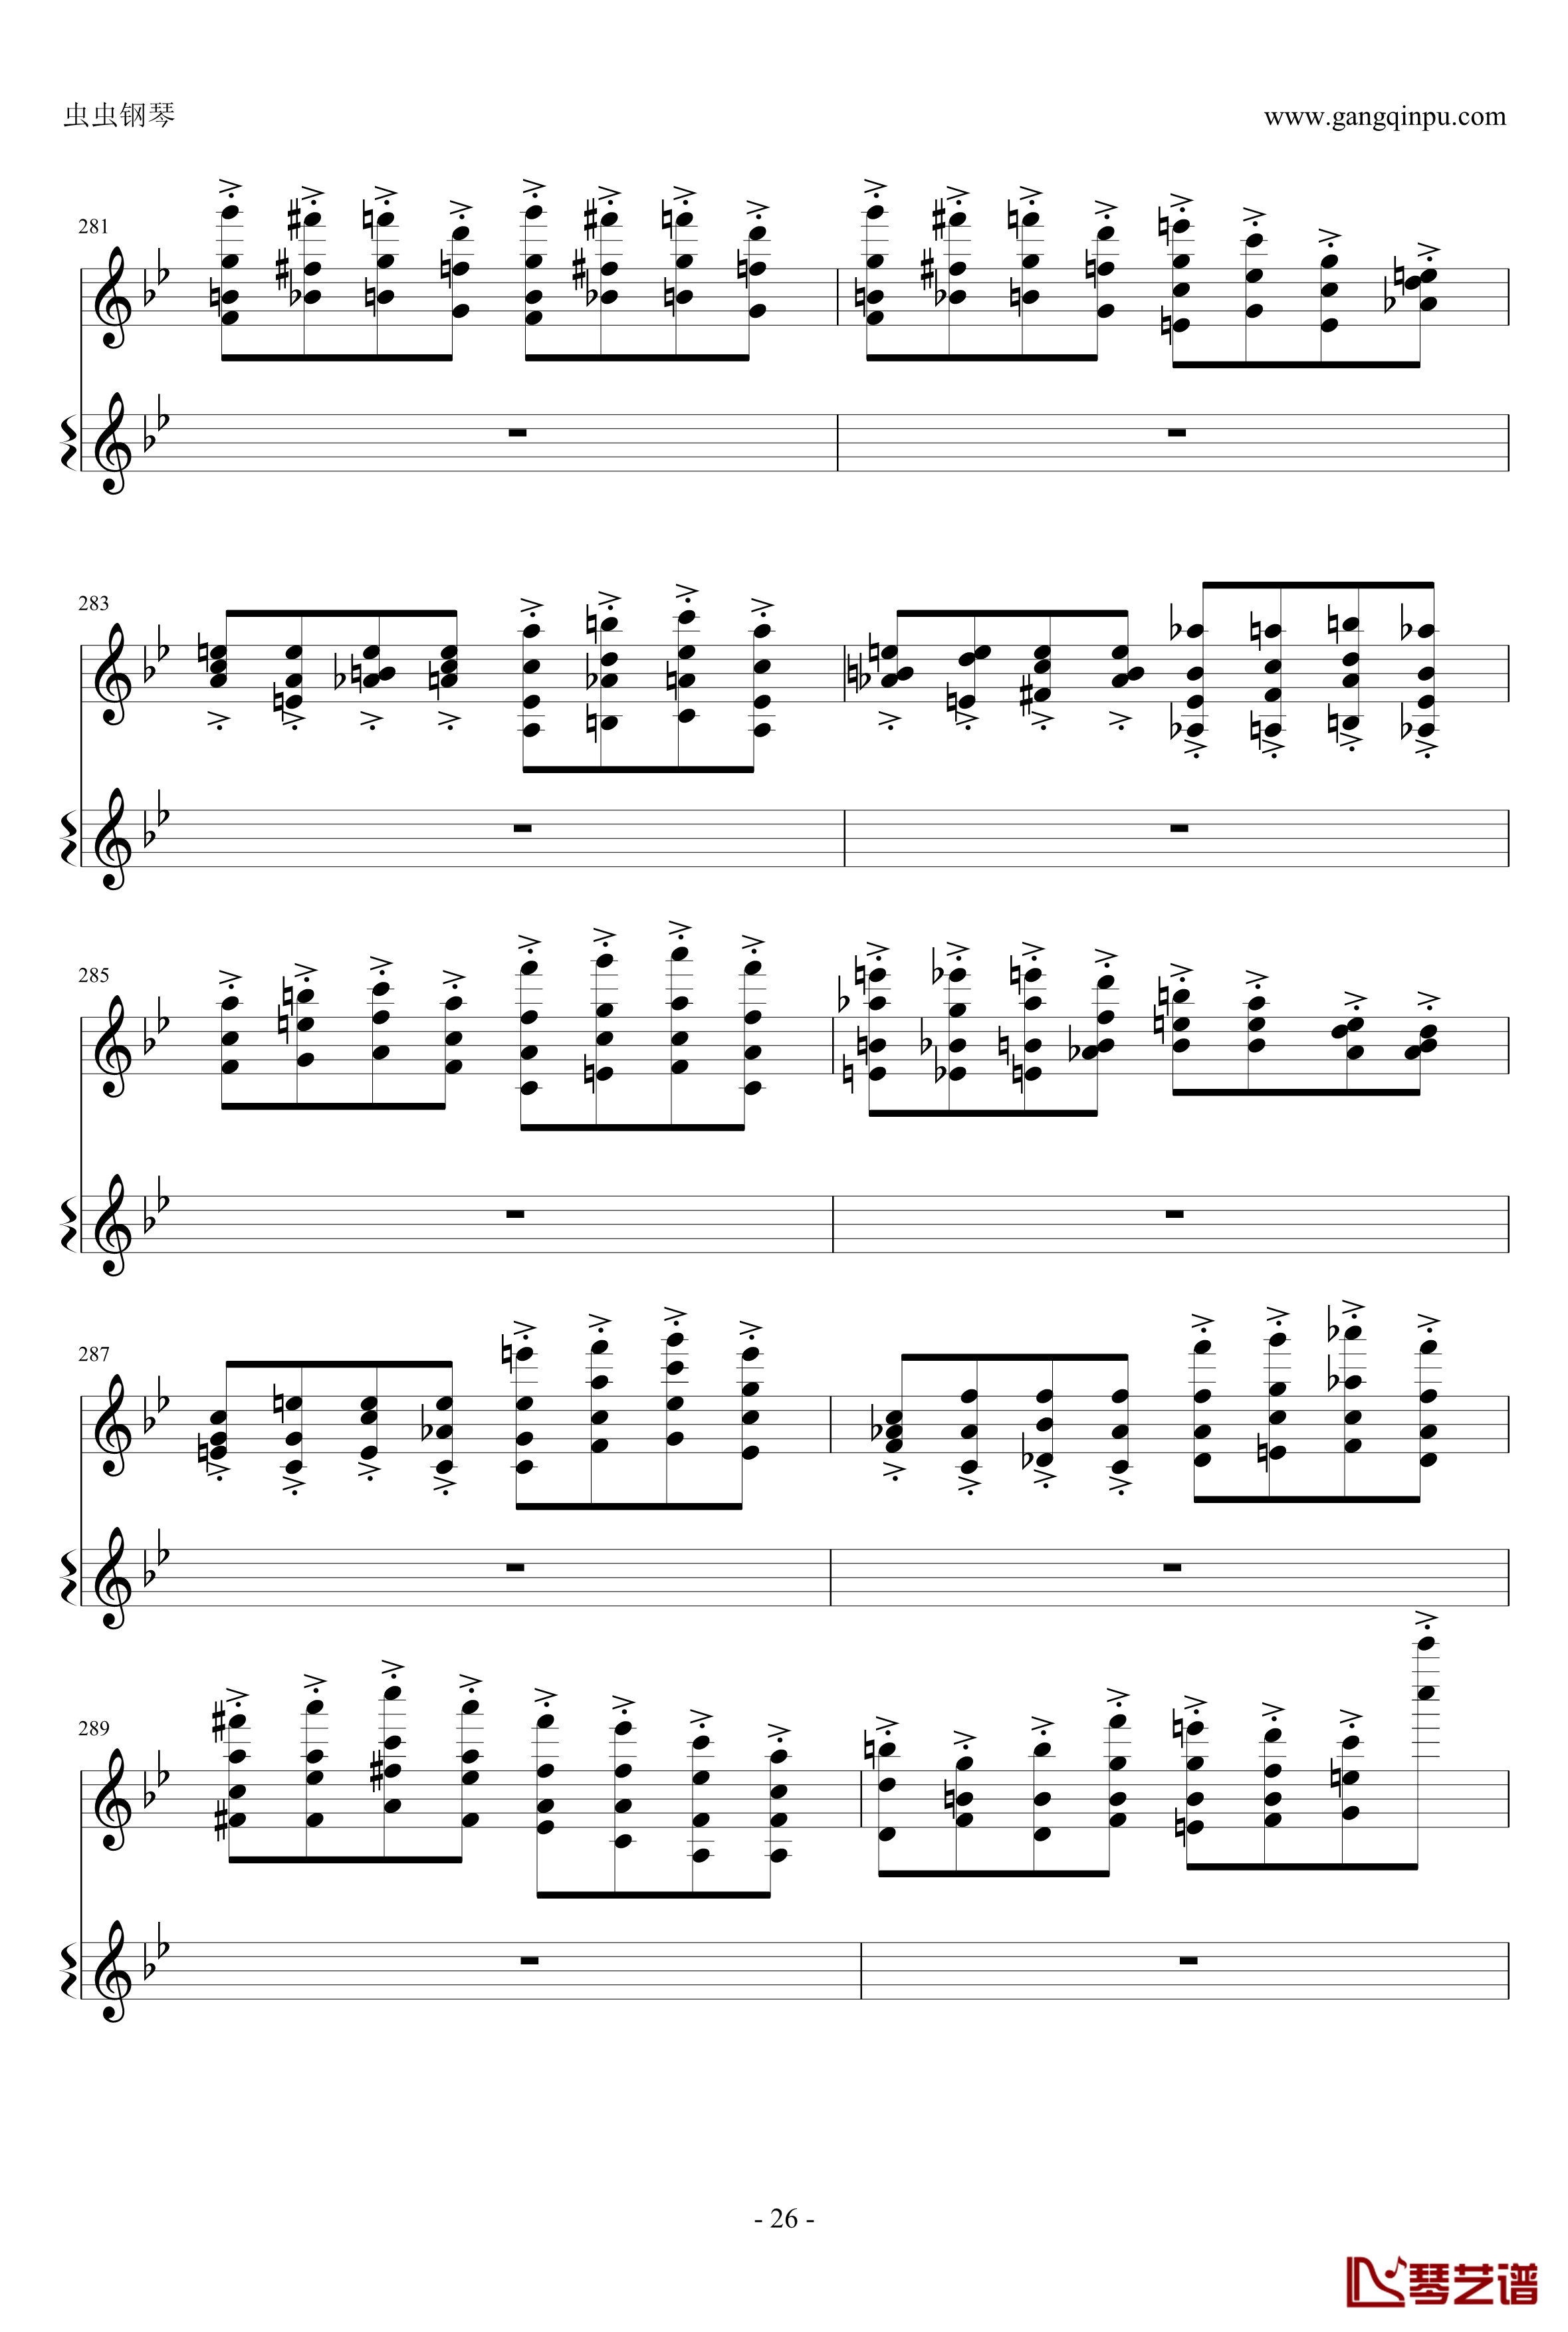 意大利国歌钢琴谱-变奏曲修改版-DXF26